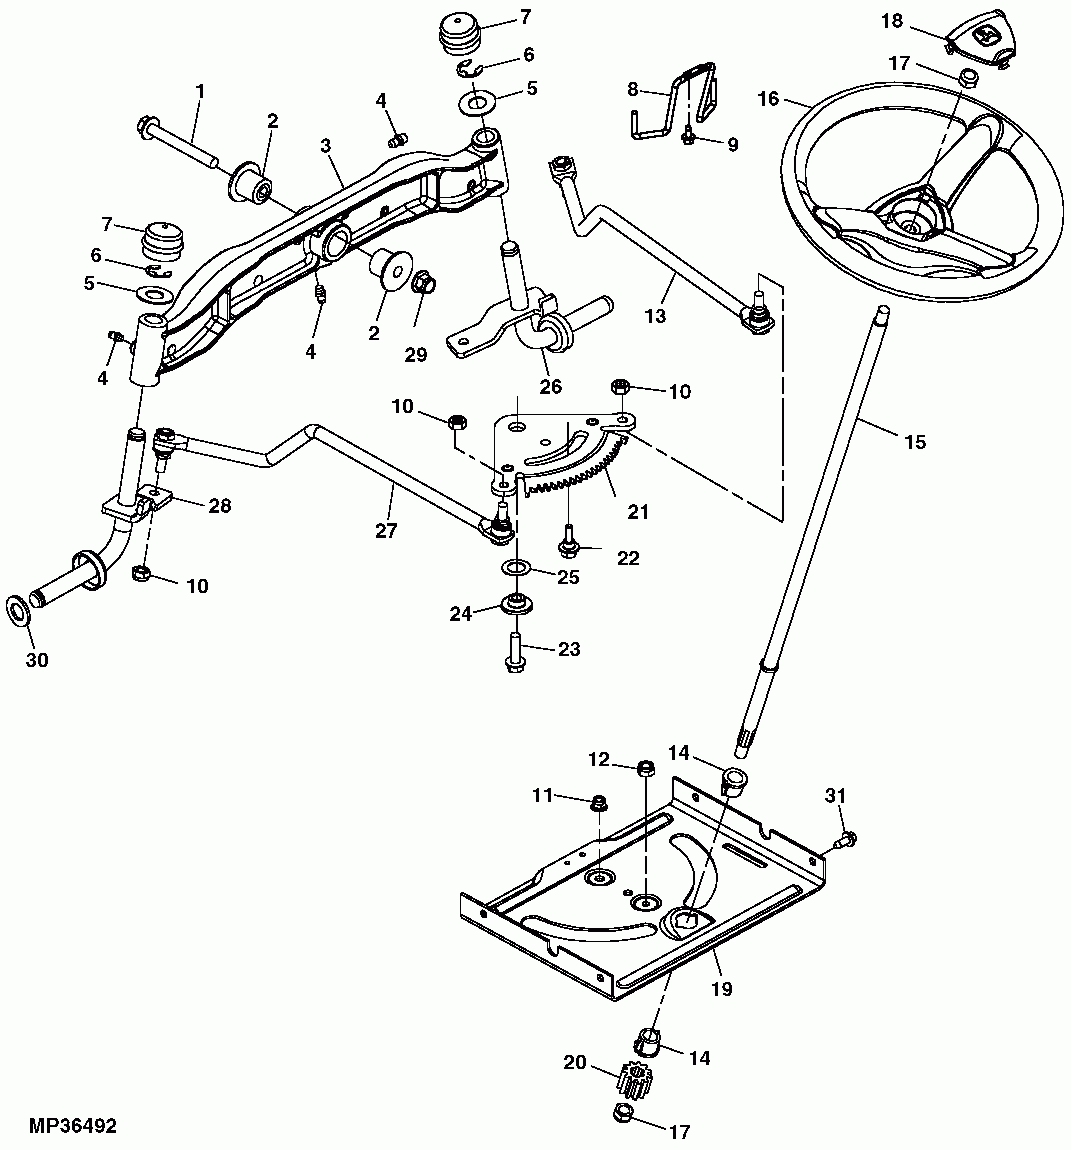 John Deere E100 Lawn Tractor Parts Manual